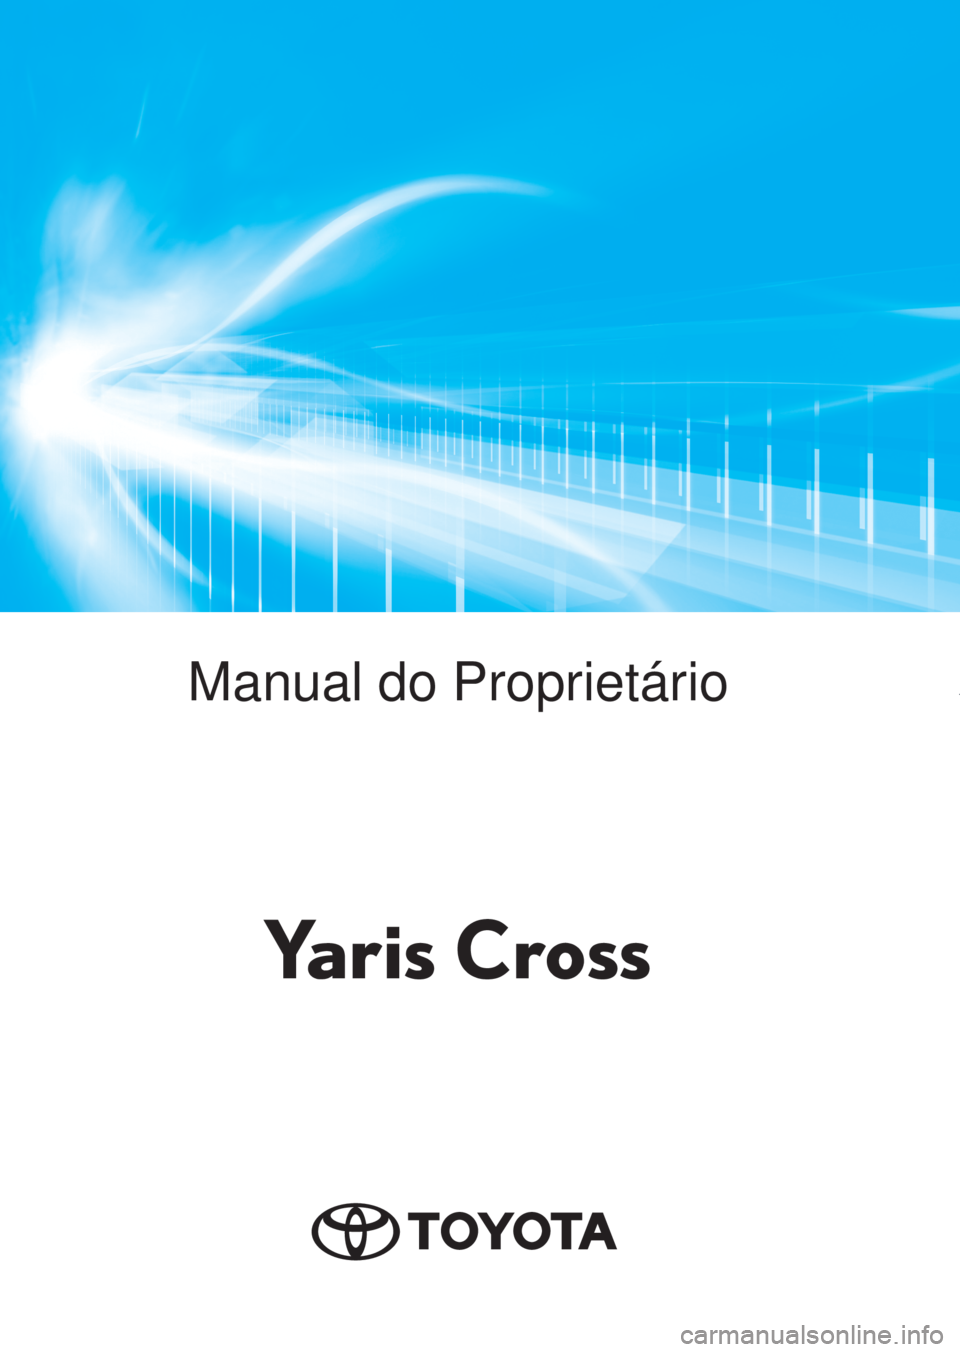 TOYOTA YARIS CROSS 2021  Manual de utilização (in Portuguese)        Yaris CrossManual do Proprietário
Yaris Cross 